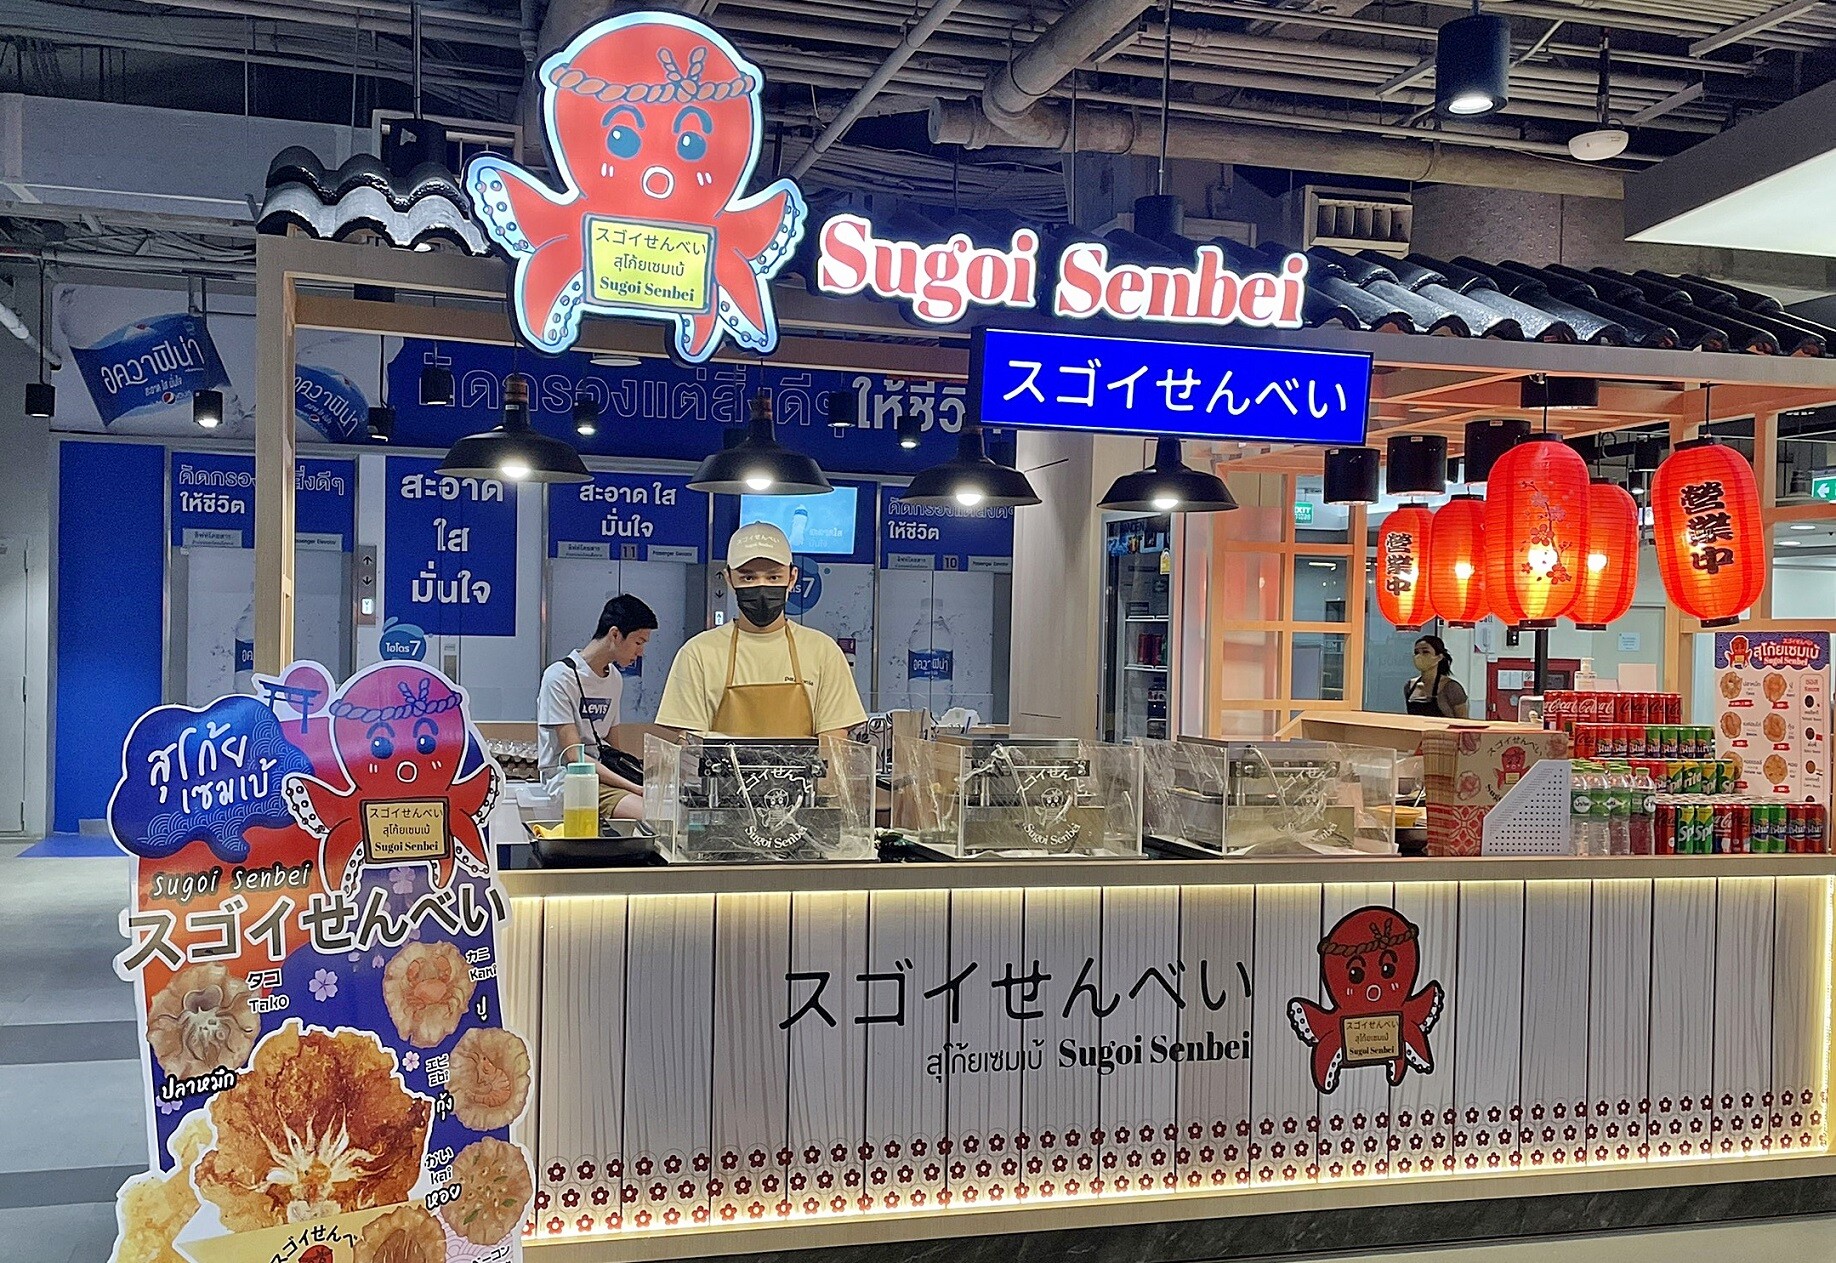 เอ็ม บี เค เซ็นเตอร์ ชวนฟินร้านขนมสุดฮิต Sugoi Senbei เปิดแล้วที่ชั้น 6 พร้อมโปรฯฉลองสาขาใหม่ลด 15 %